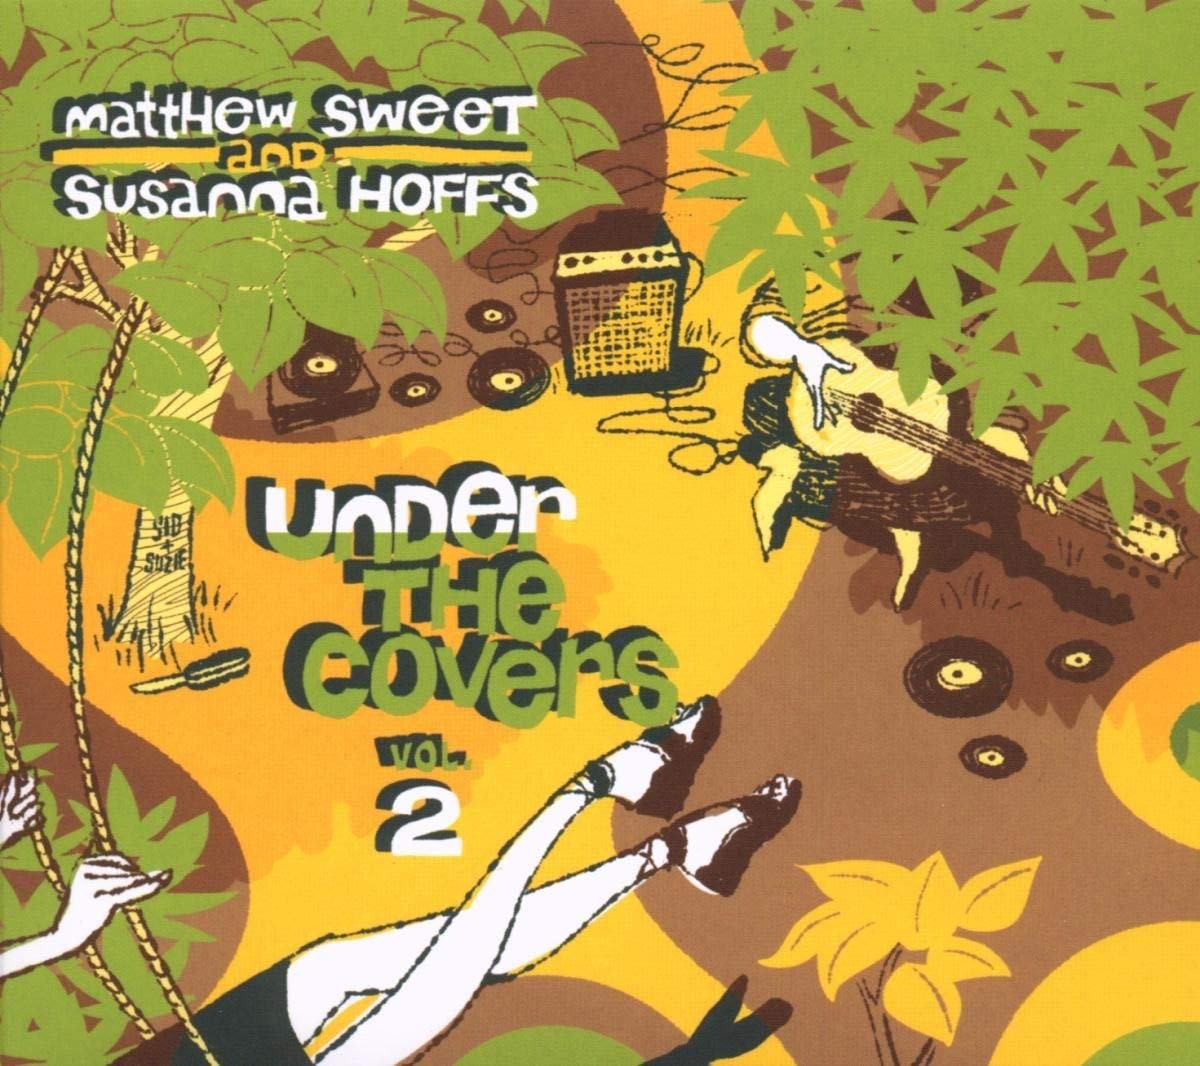 Matthew Sweet and Susanna Hoffs "Under the Covers, Vol. 2" LP